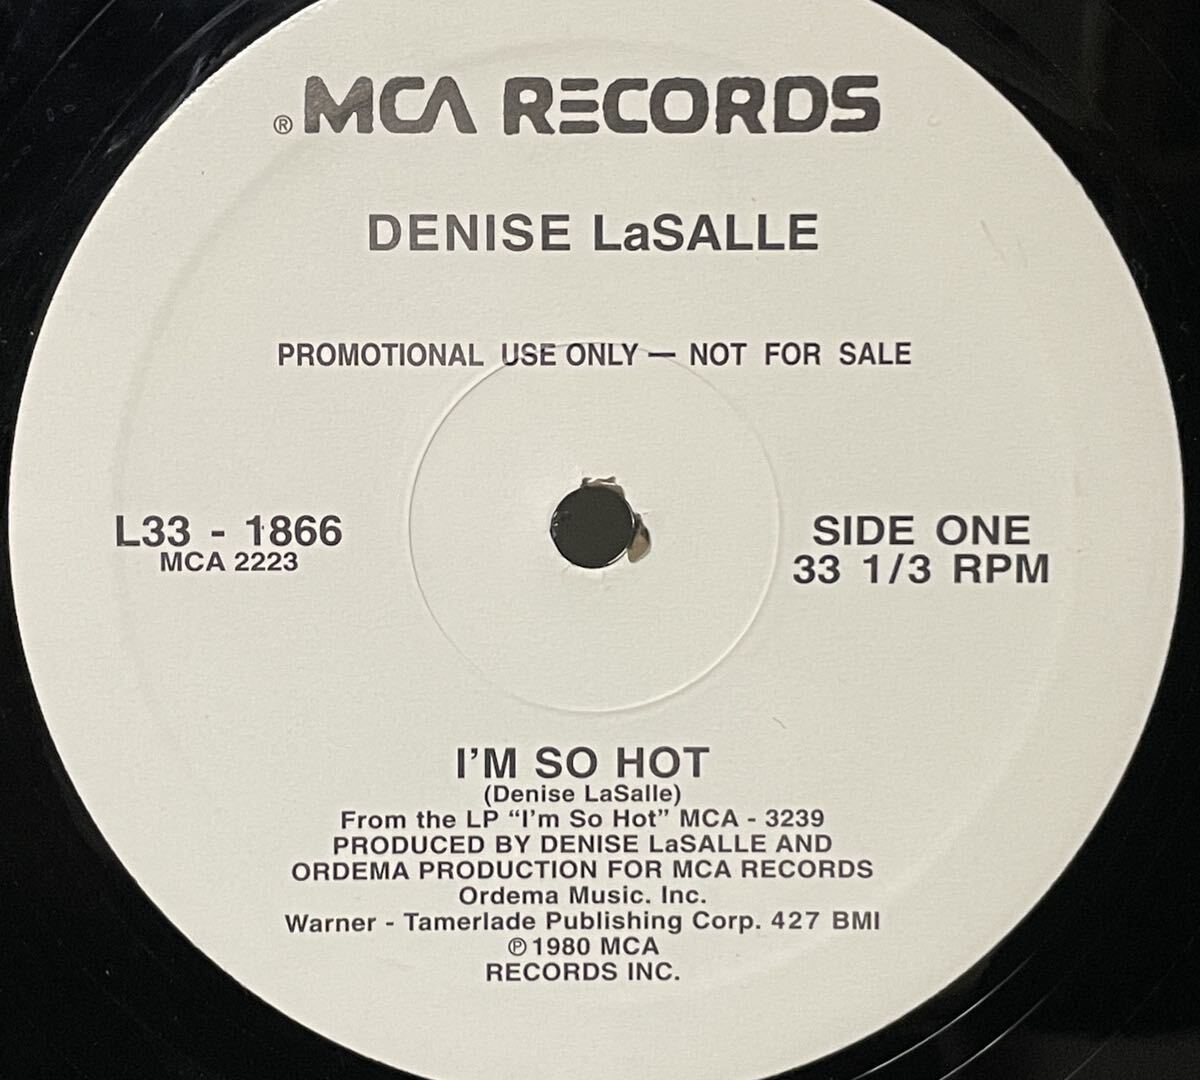 DENISE LaSALLE / I'M SO HOT 中古プロモ盤12インチの画像1